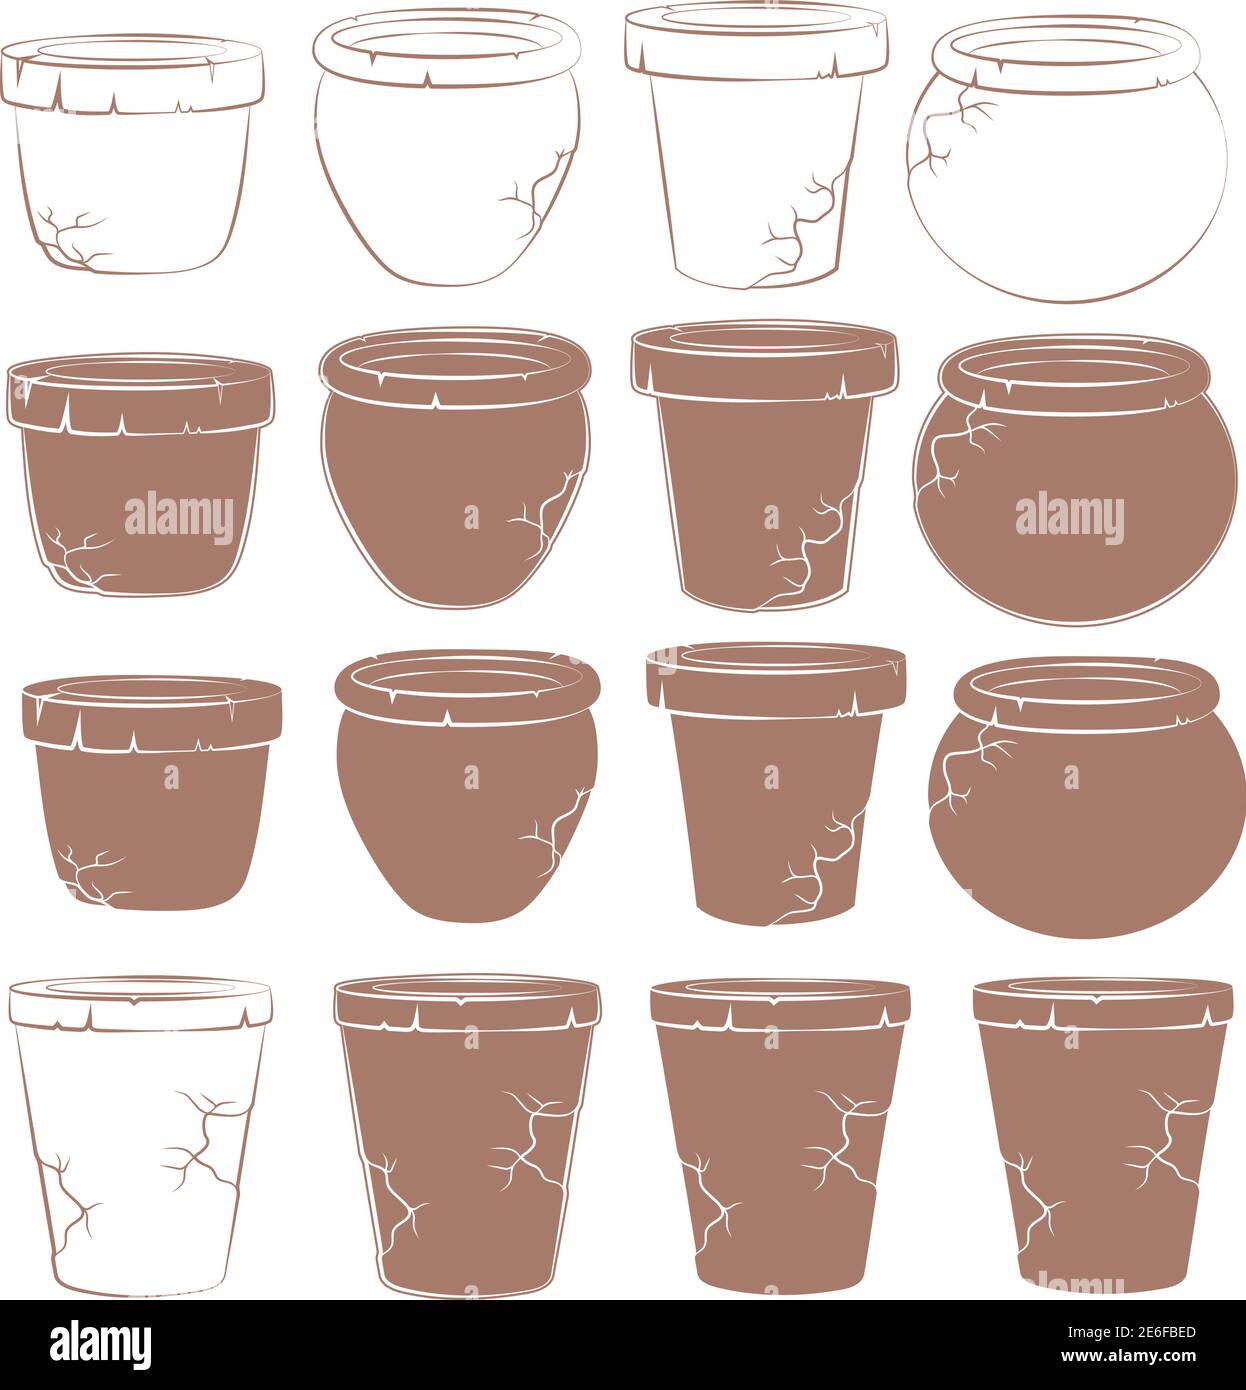 Serie vettoriale di vecchi vasi di argilla per fiori. Oggetti isolati. Illustrazione Vettoriale